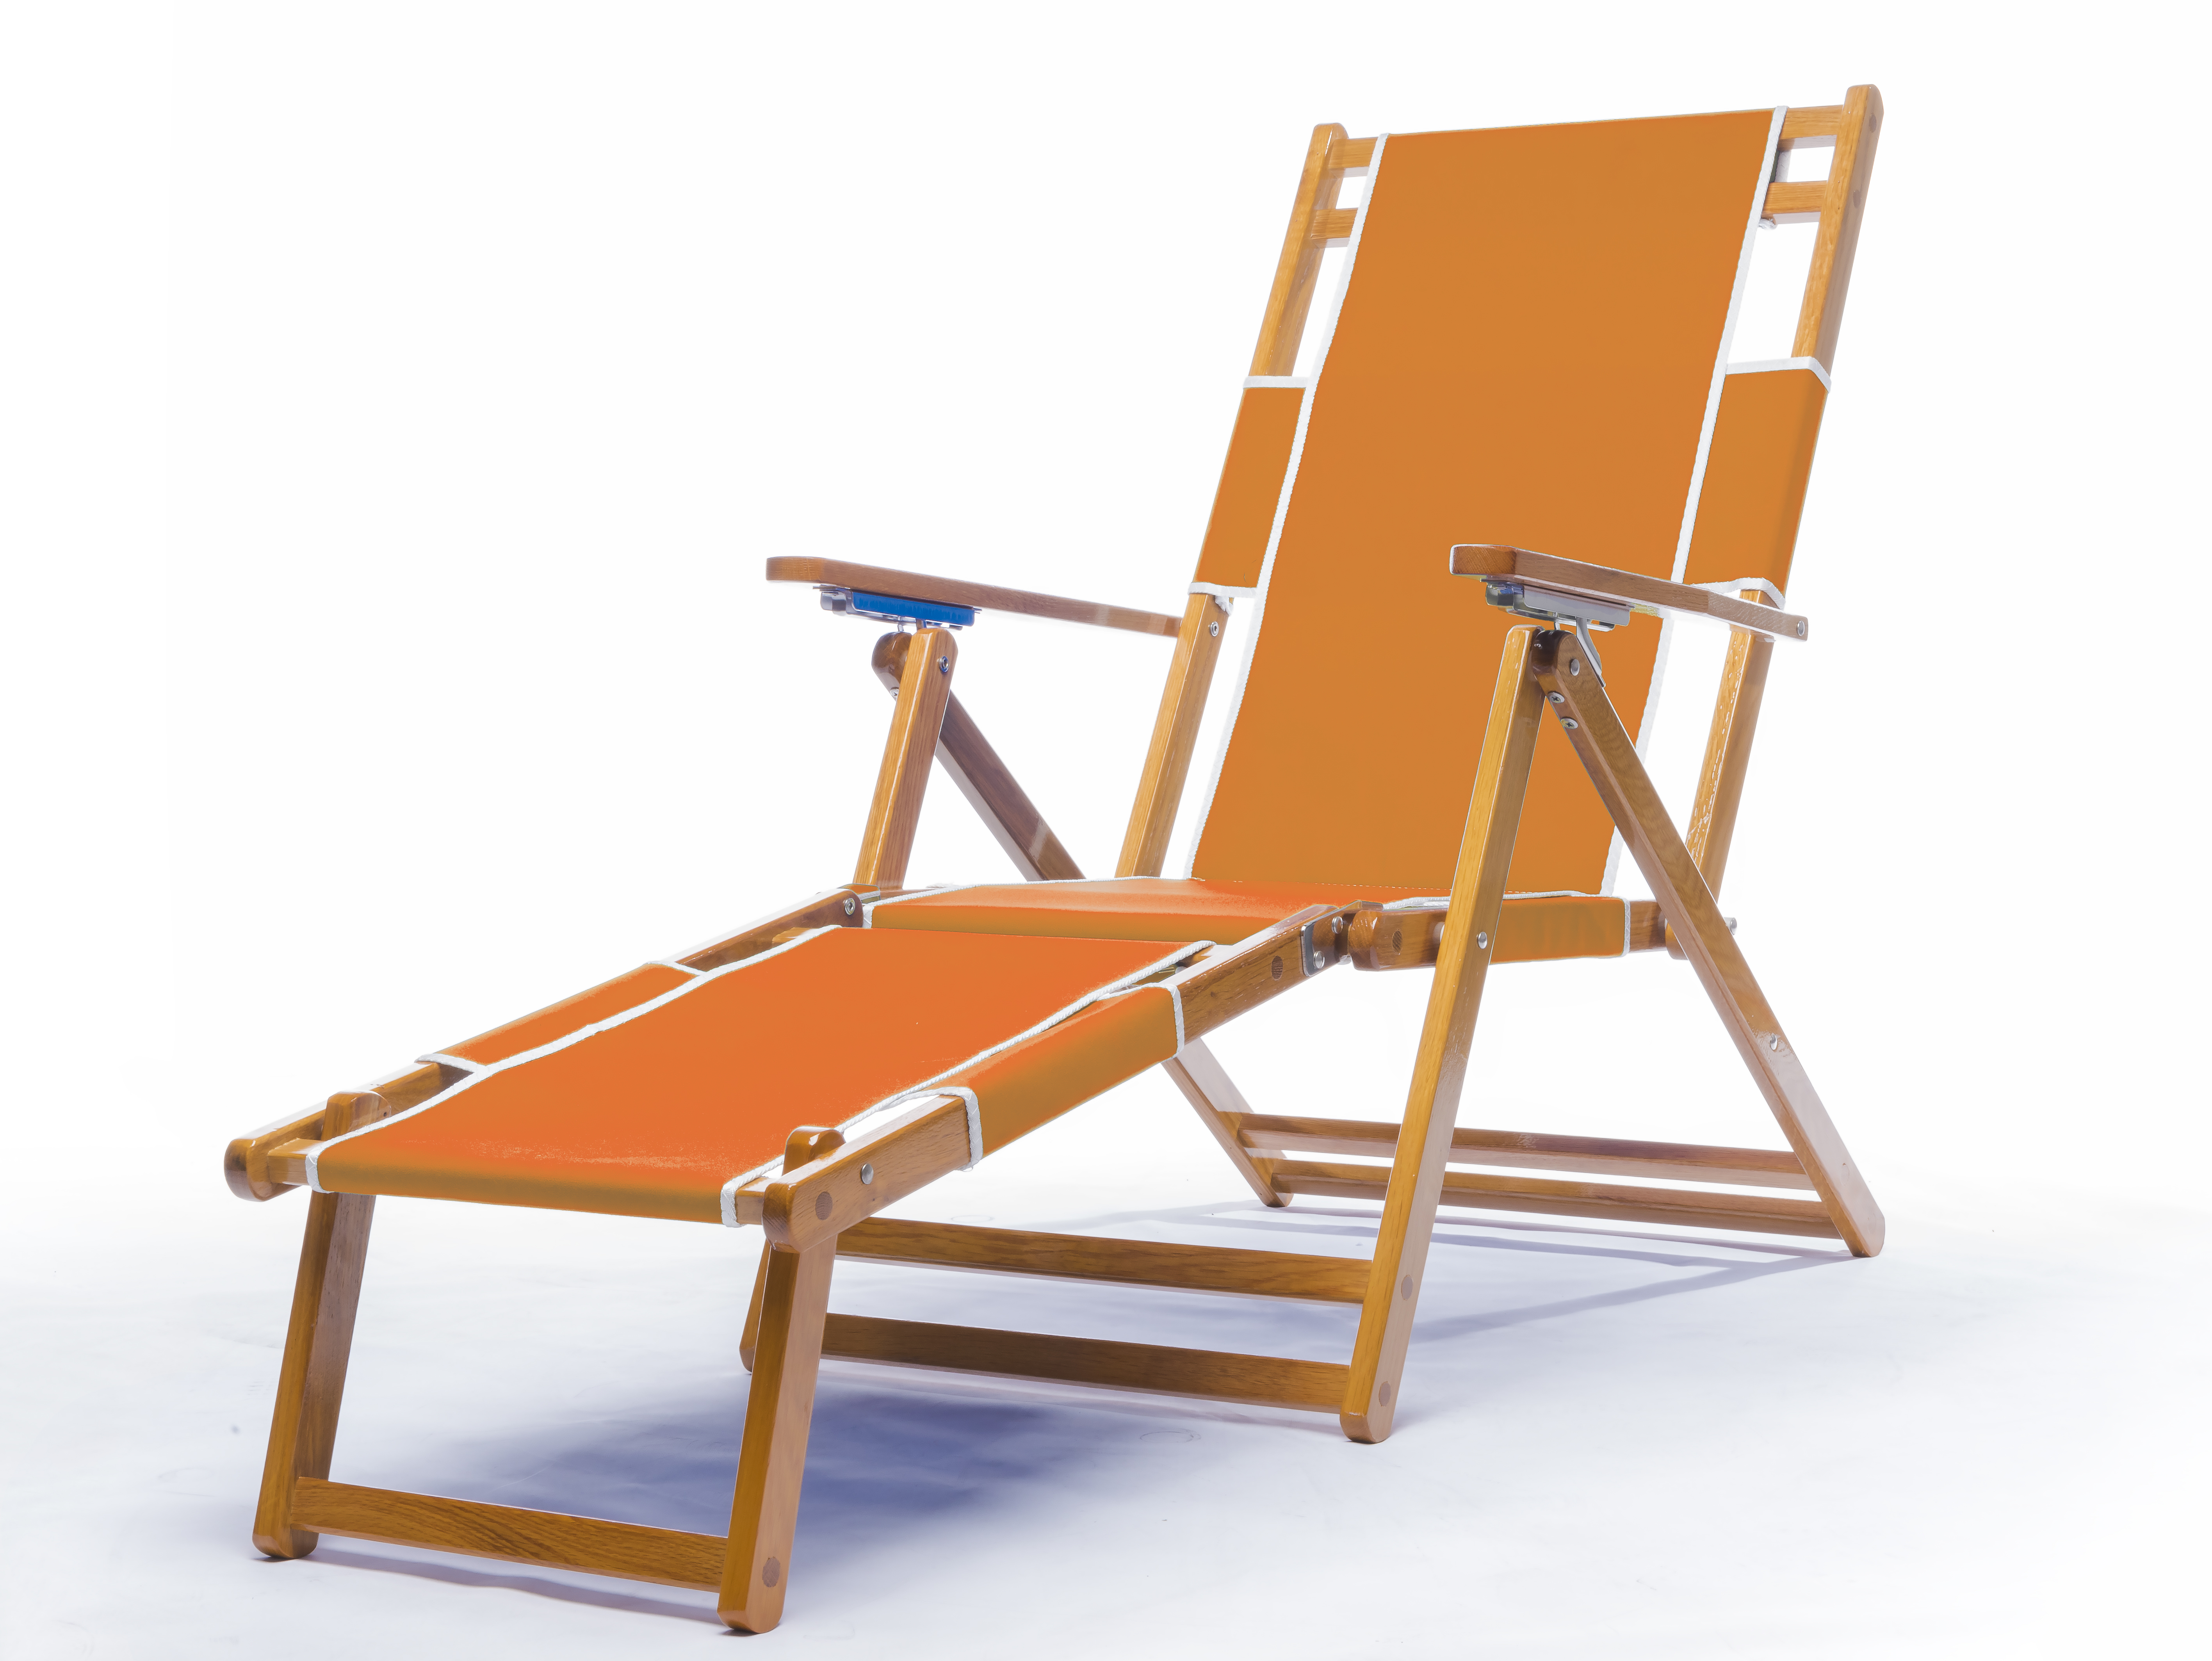 Beach Chair
Orange
$189.00
